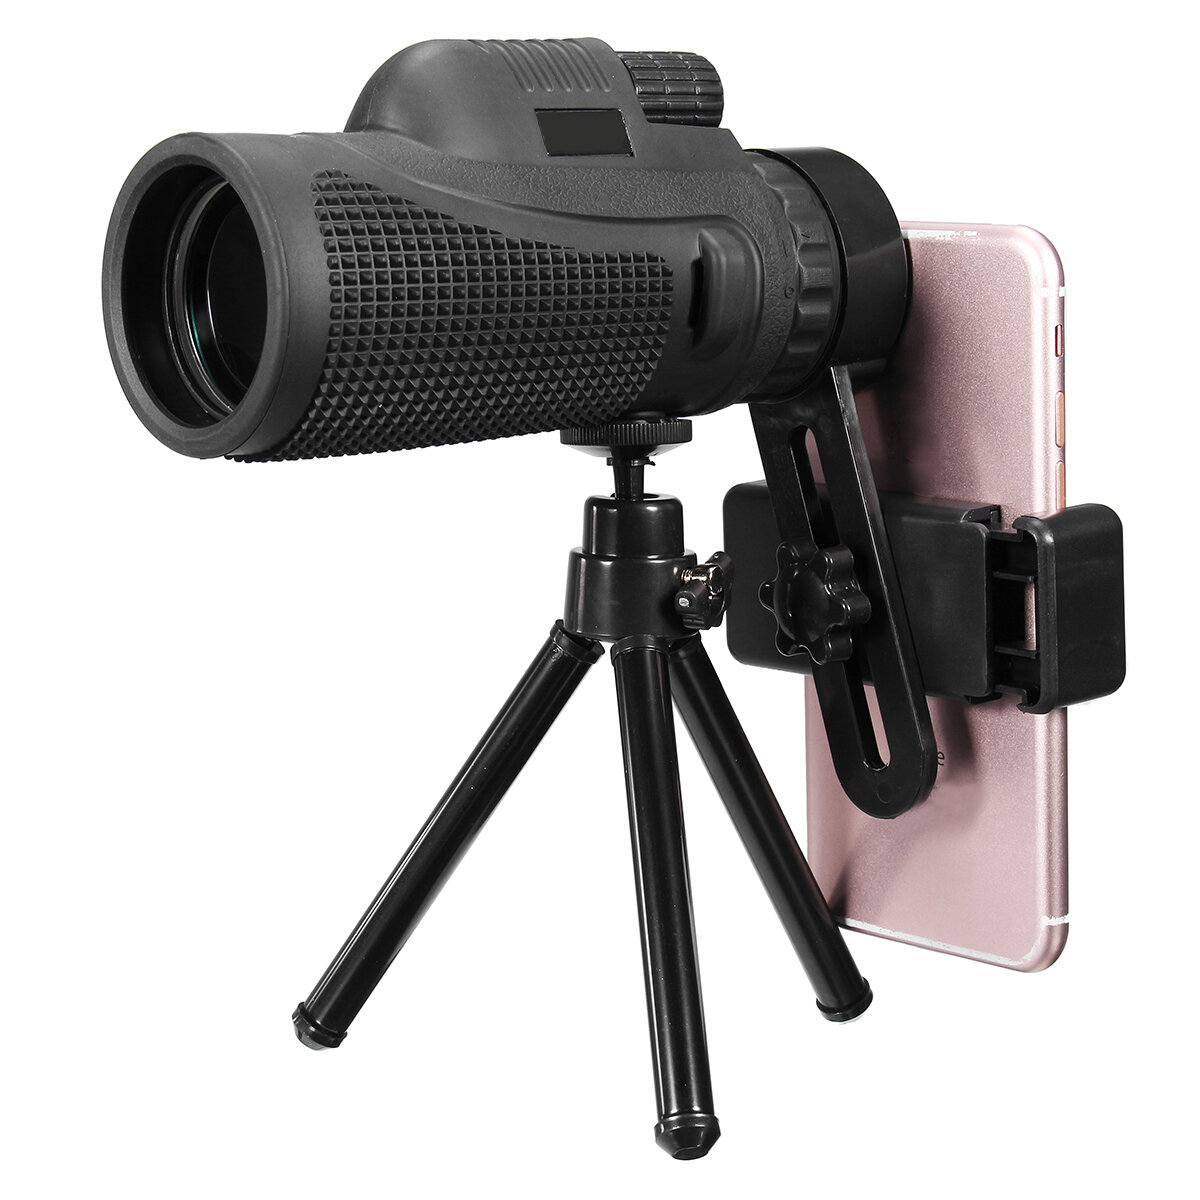 16X52 / 40X60 HD Zoom монокуляр телескоп телескоп камера Объектив держатель для телефона / Штатив подарок для На открыто